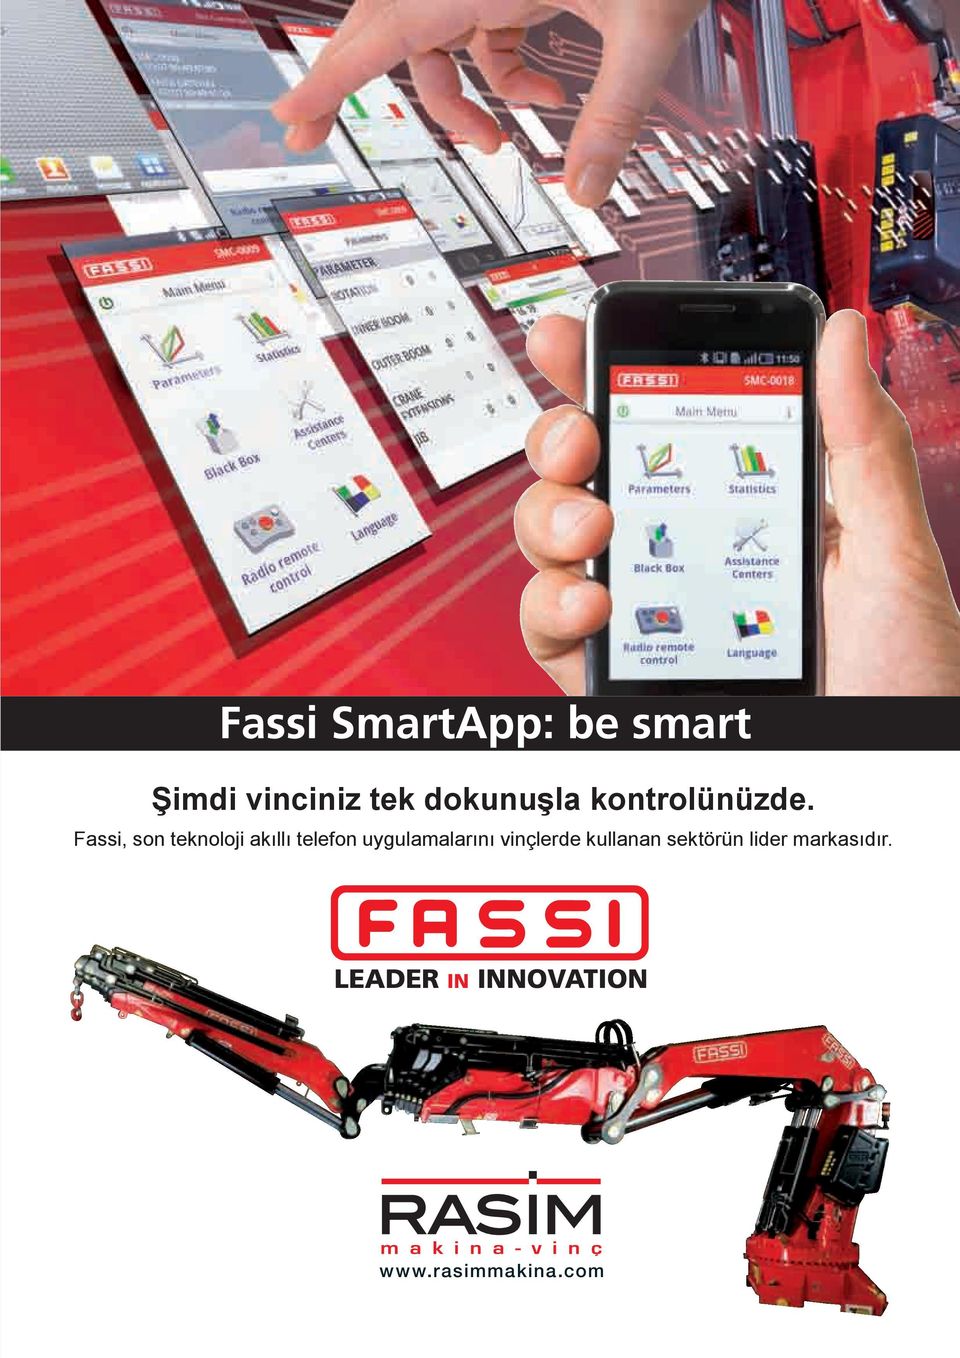 Fassi, son teknoloji akıllı telefon uygulamalarını